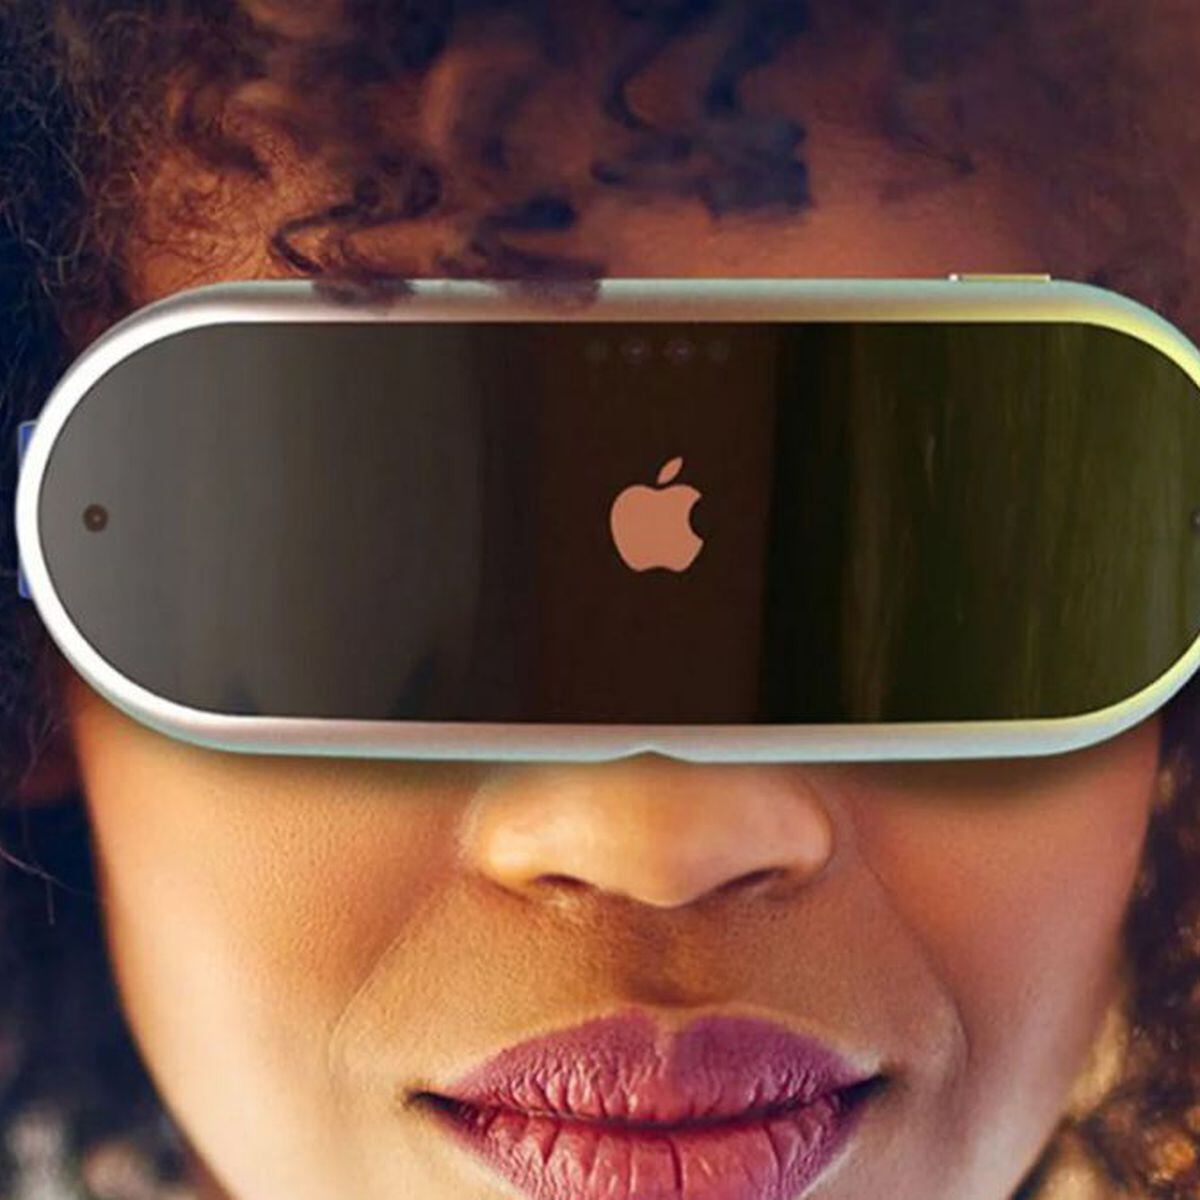 Las gafas de realidad aumentada de Apple sustituirán al iPhone en el futuro